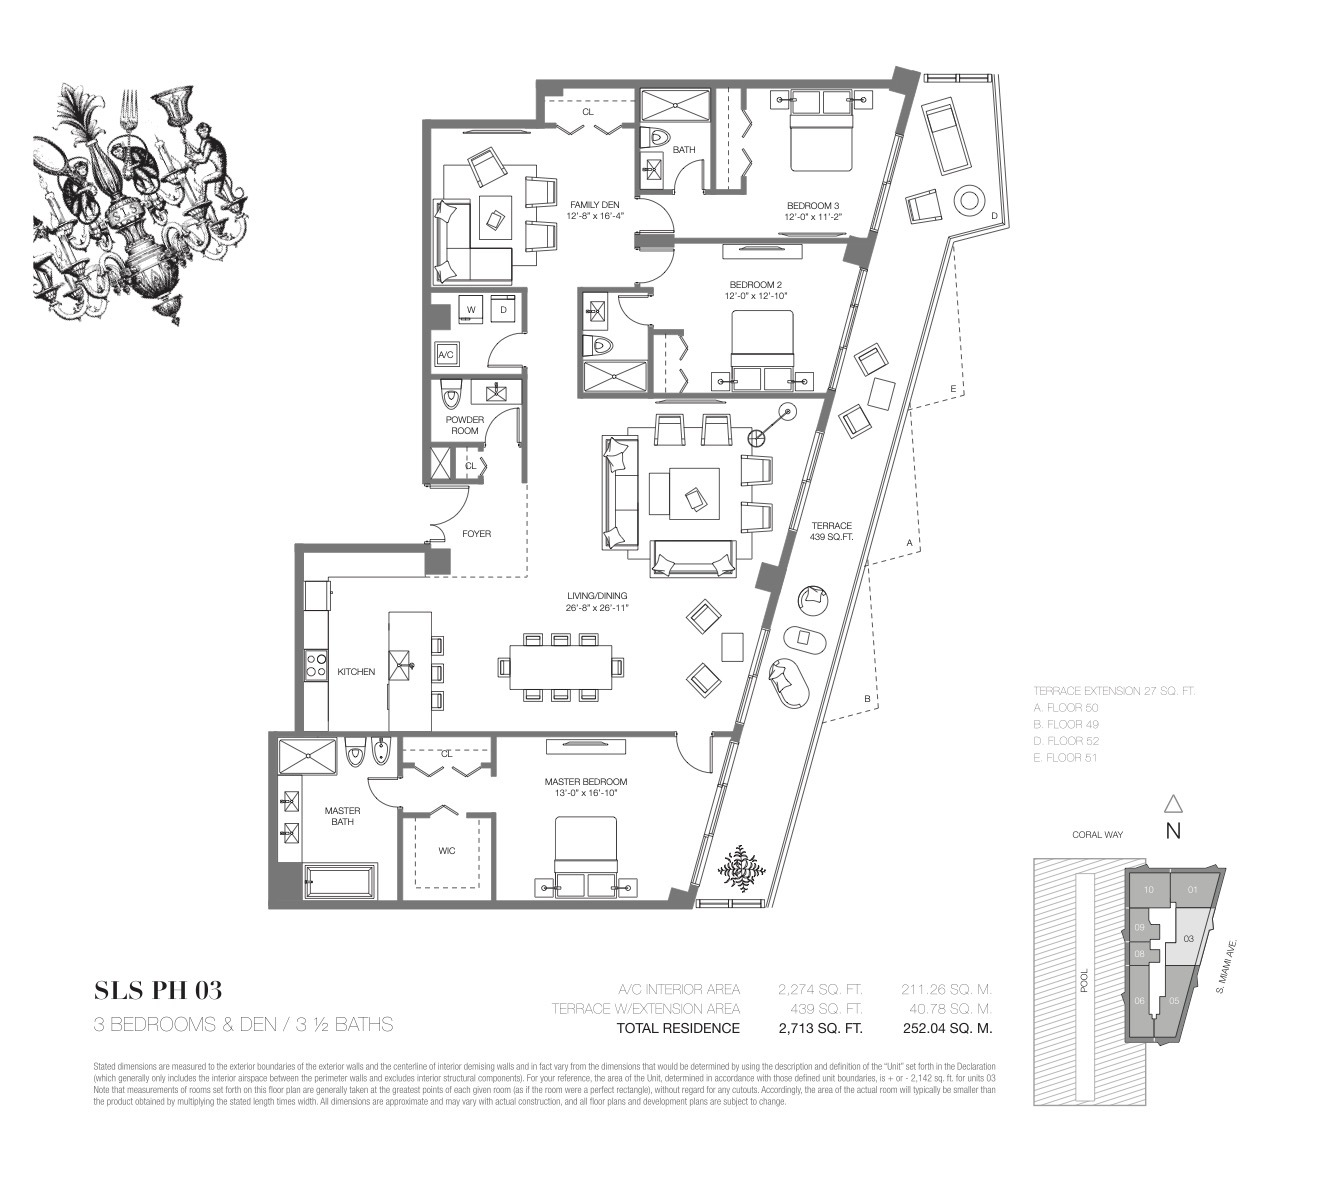 Floor Plan for SLS Brickell Floorplans, PH 03